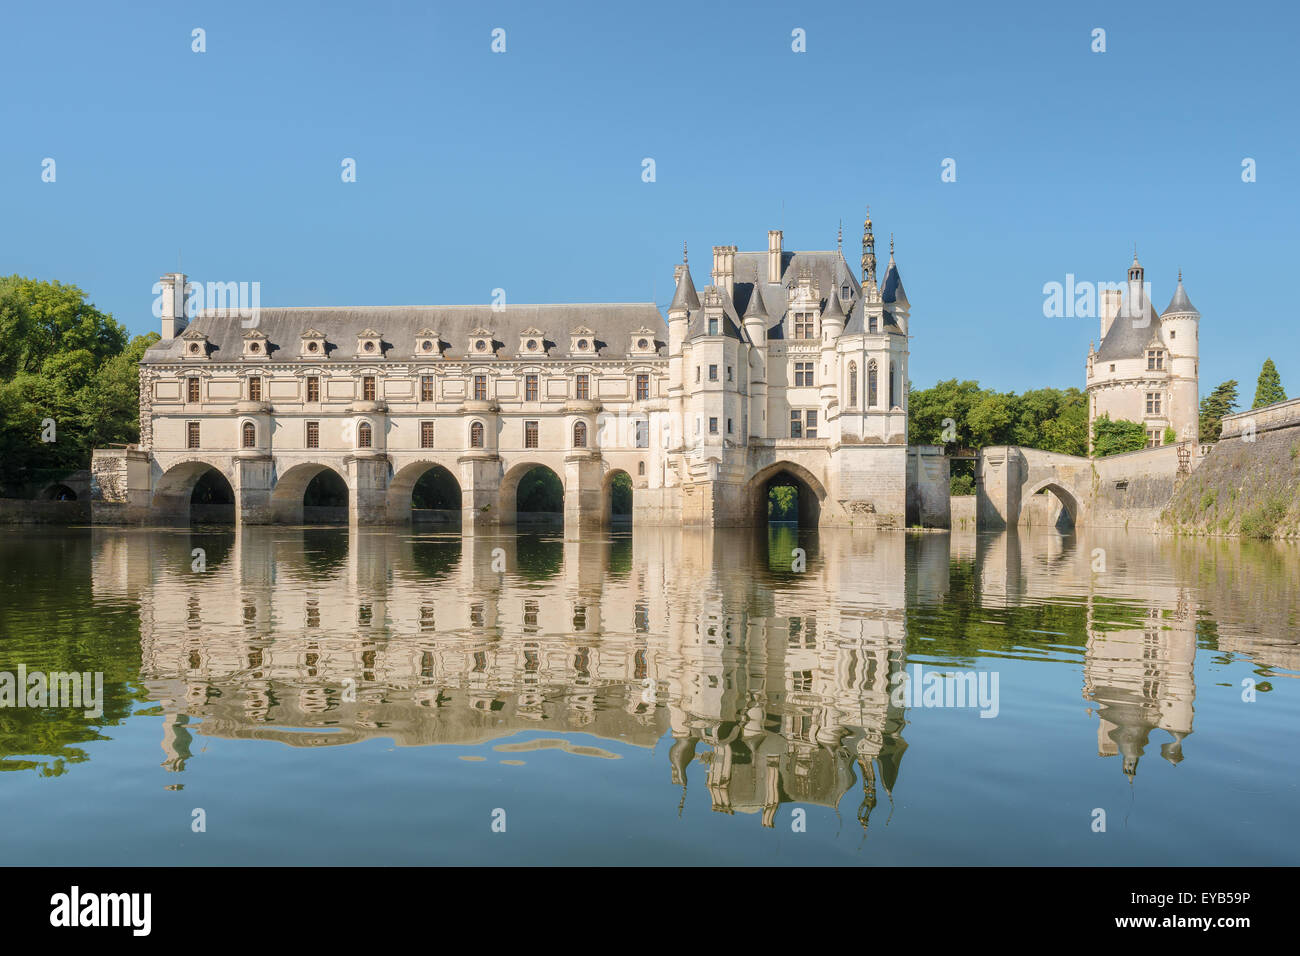 Château de Chenonceau, construit sur le Cher , vallée de la Loire,France, vue de la rivière, sur fond de ciel bleu dégradé. Banque D'Images